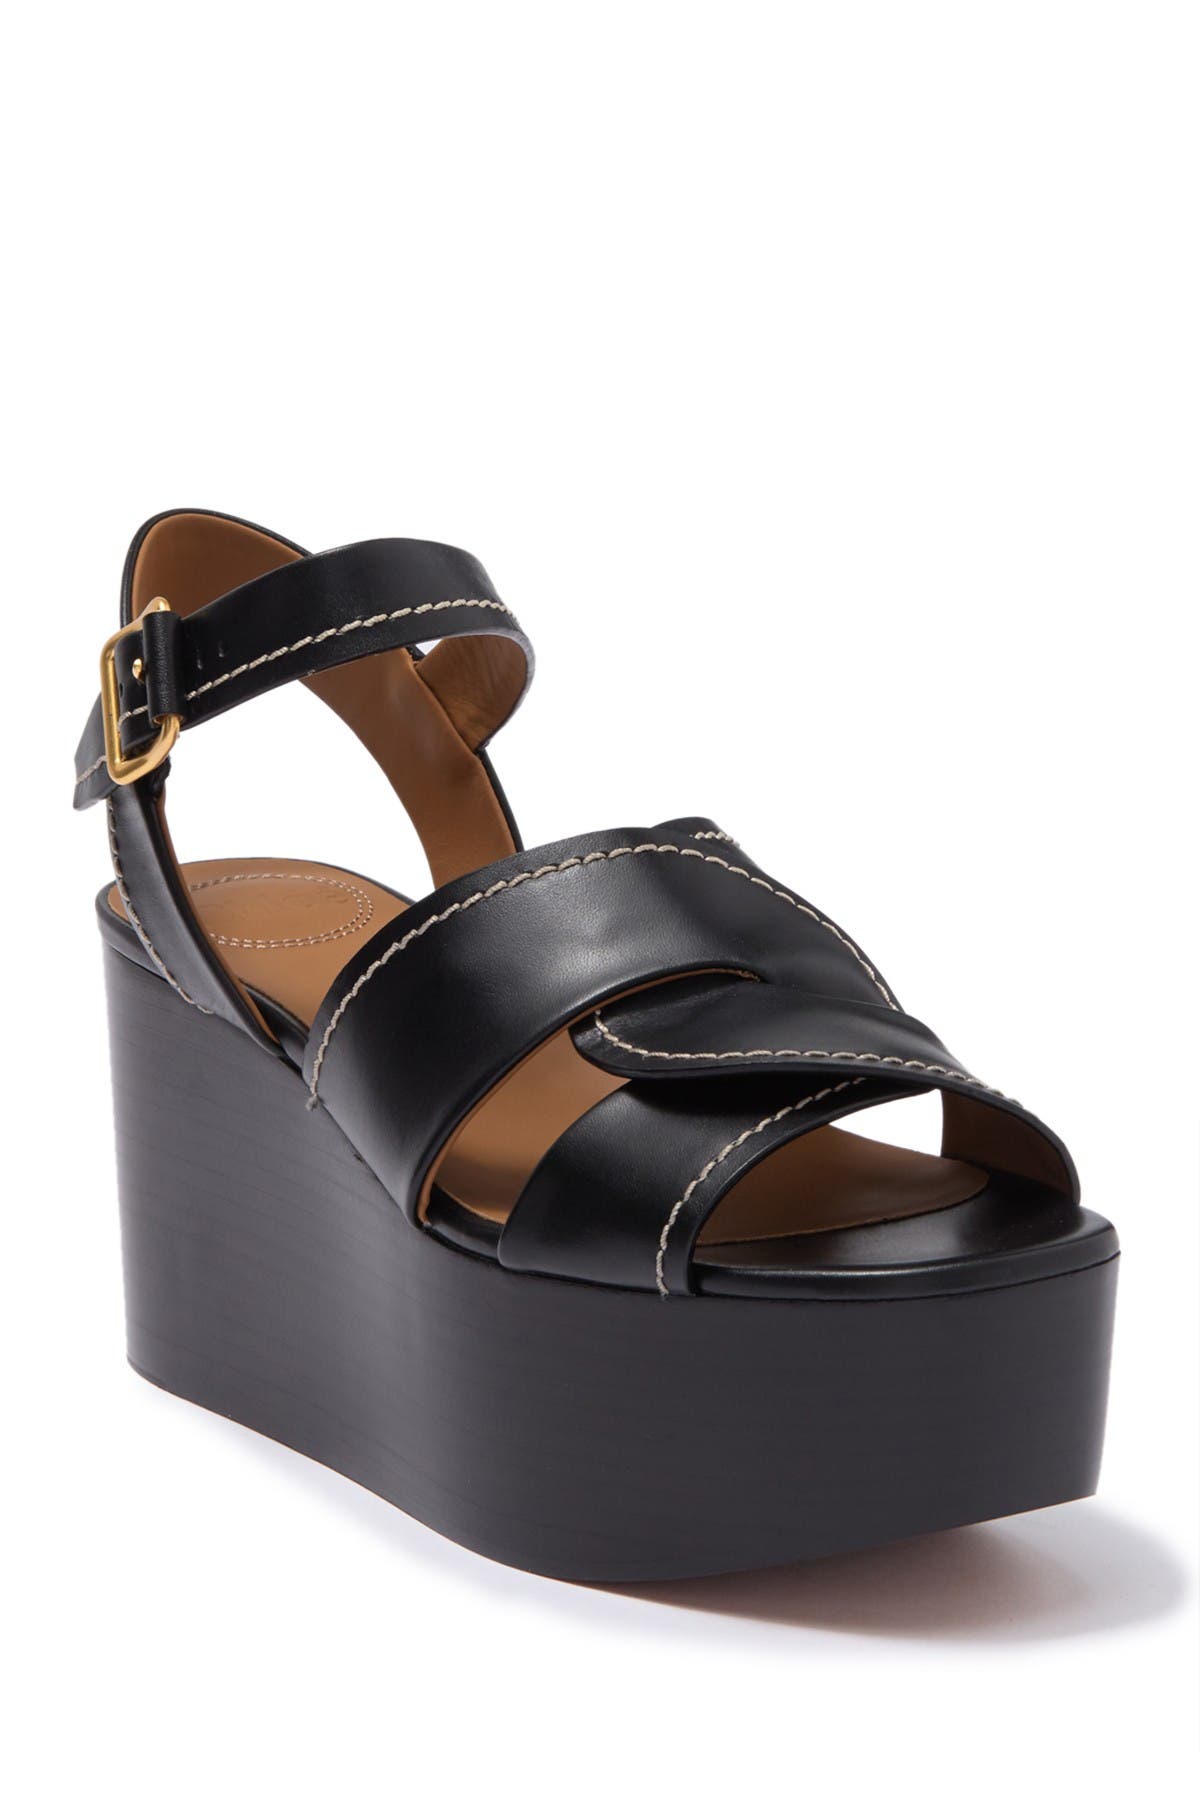 Chloé Candice Platform Wedge Sandal In Black